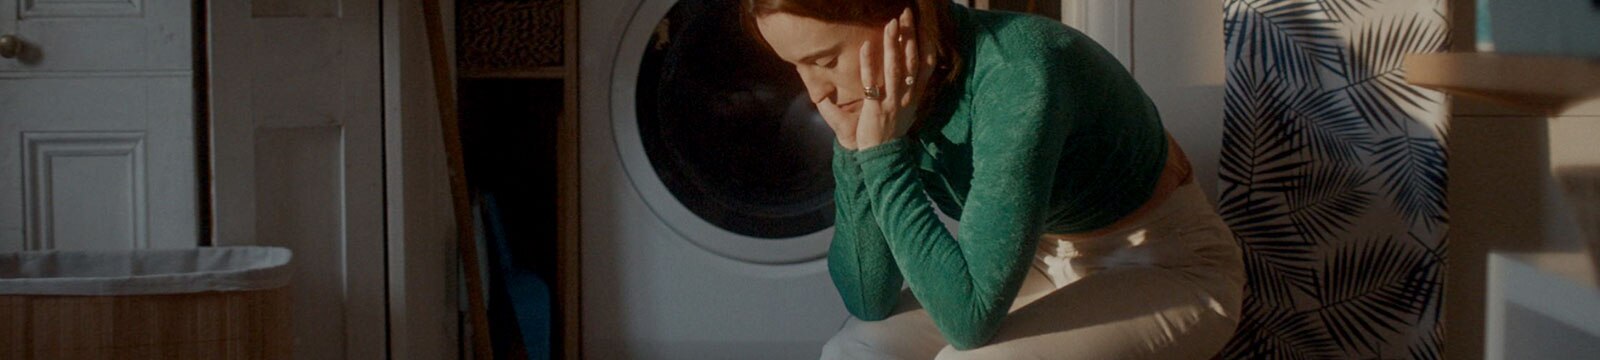 En sliten kvinne sitter alene i vaskerommet